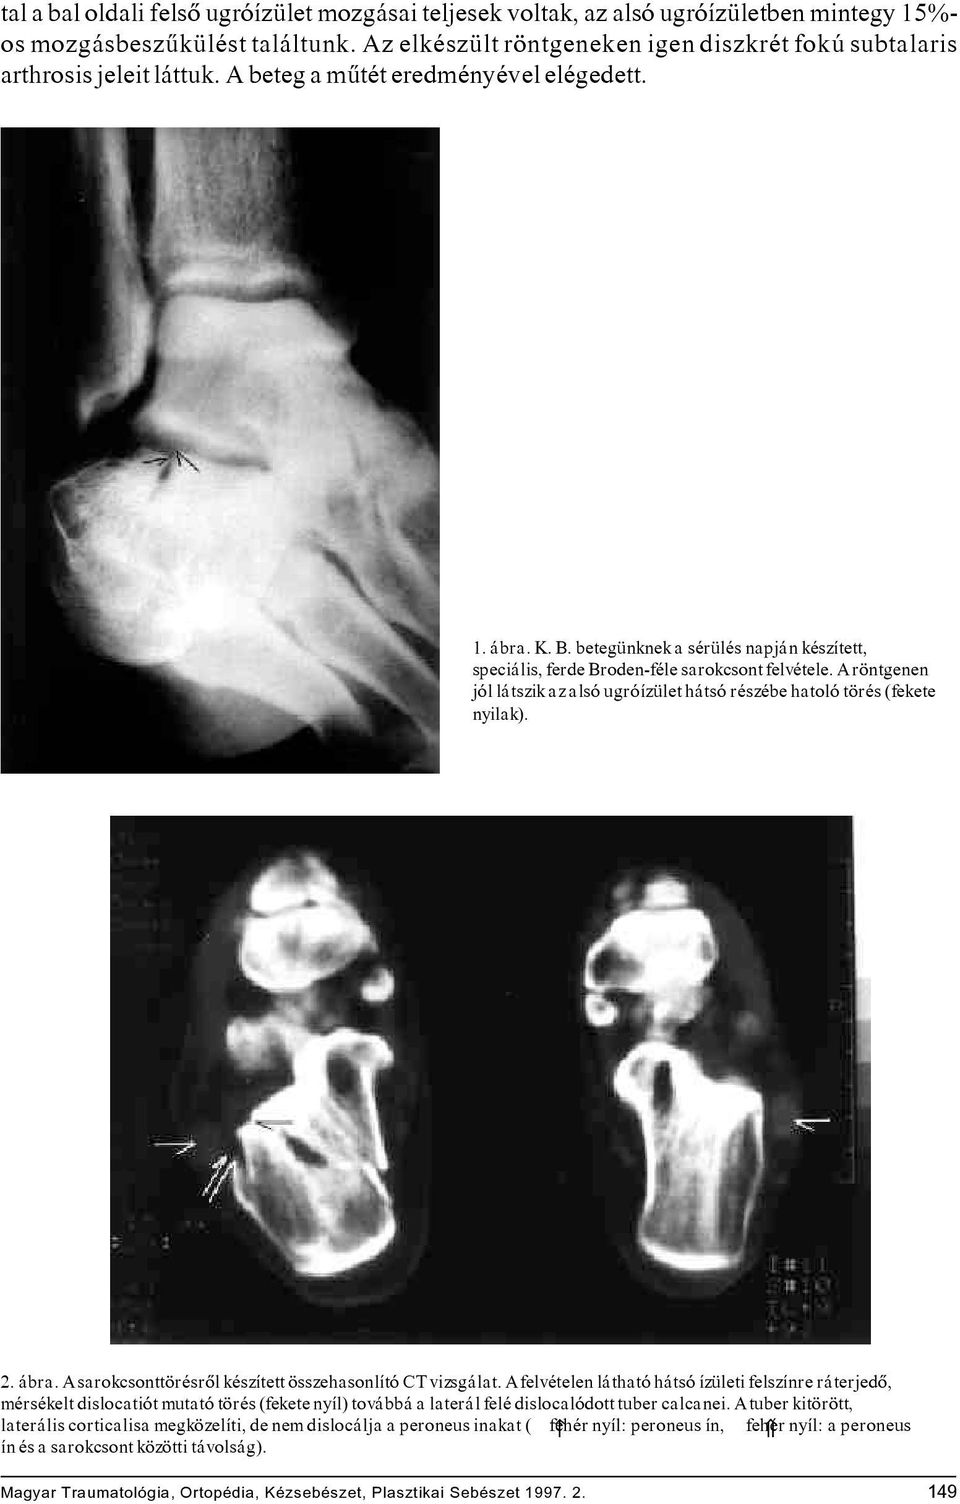 betegünknek a sérülés napján készített, speciális, ferde Broden-féle sarokcsont felvétele. A röntgenen jól látszik az alsó ugróízület hátsó részébe hatoló törés (fekete nyilak). 2. ábra.